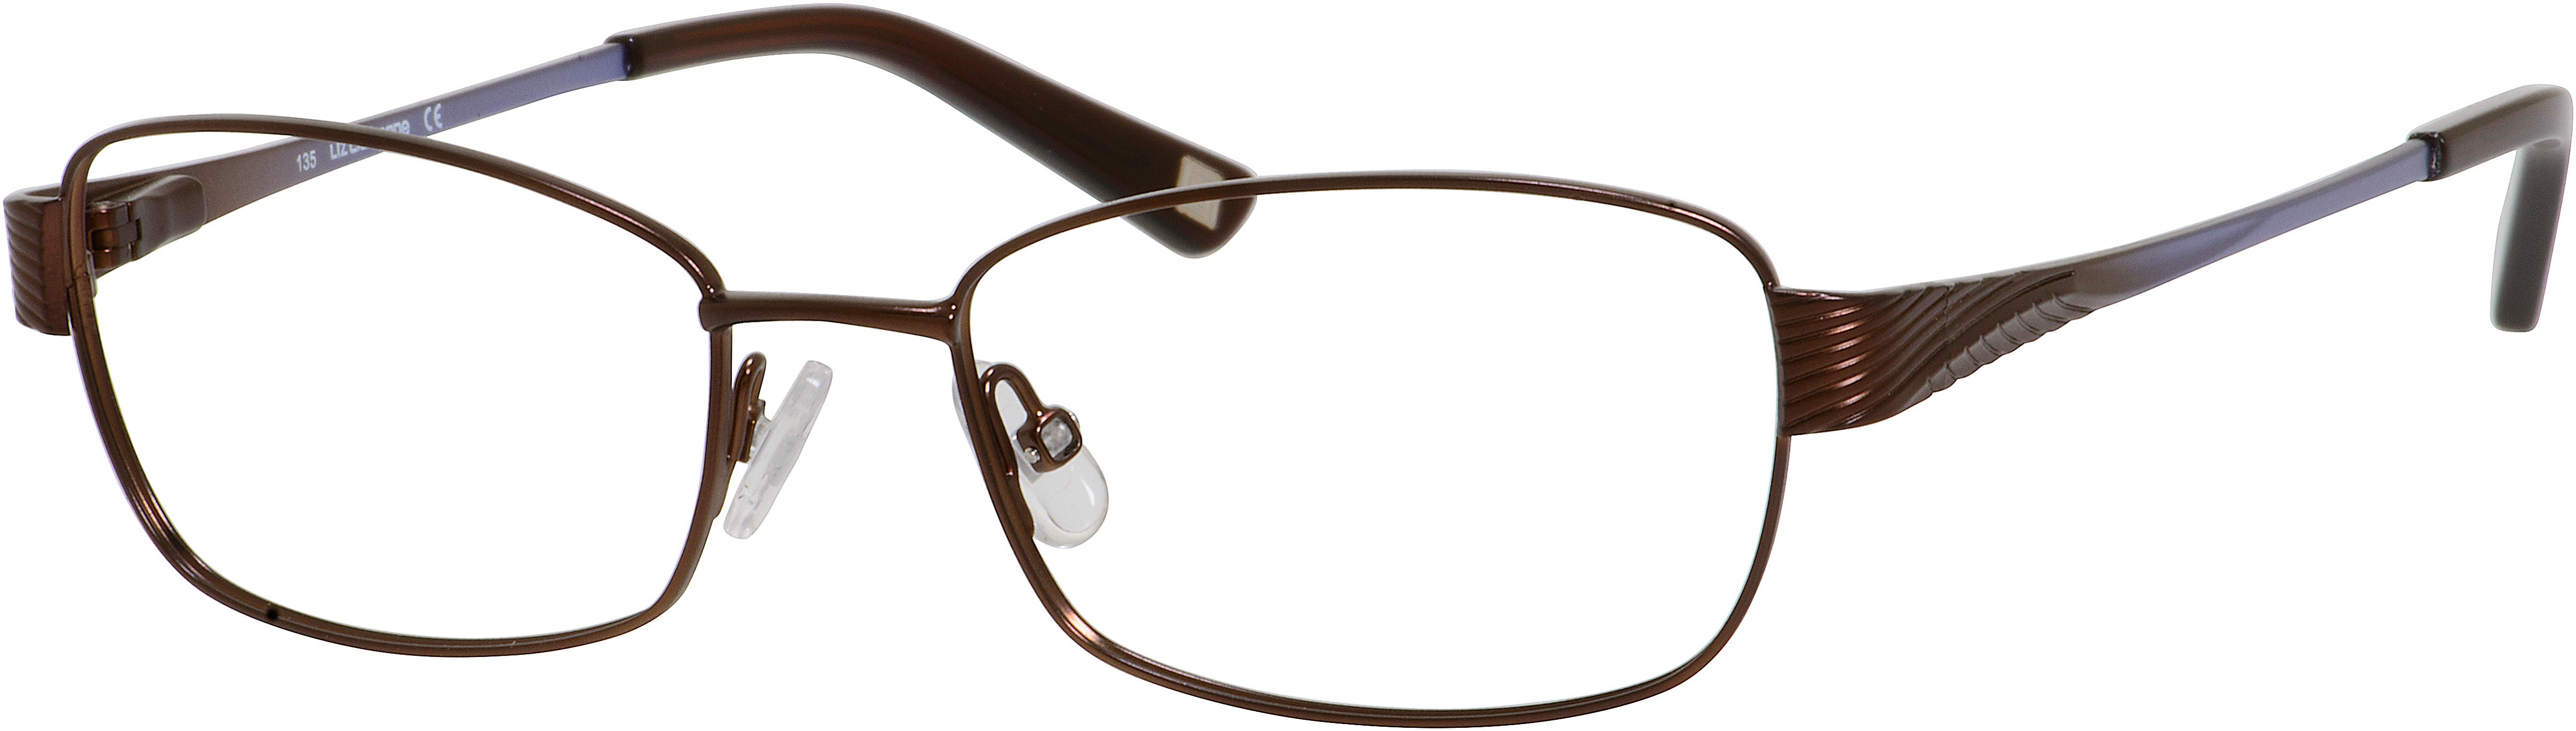  Liz Claiborne 427 Oval Eyeglasses 01J3-01J3  Brown (00 Demo Lens)